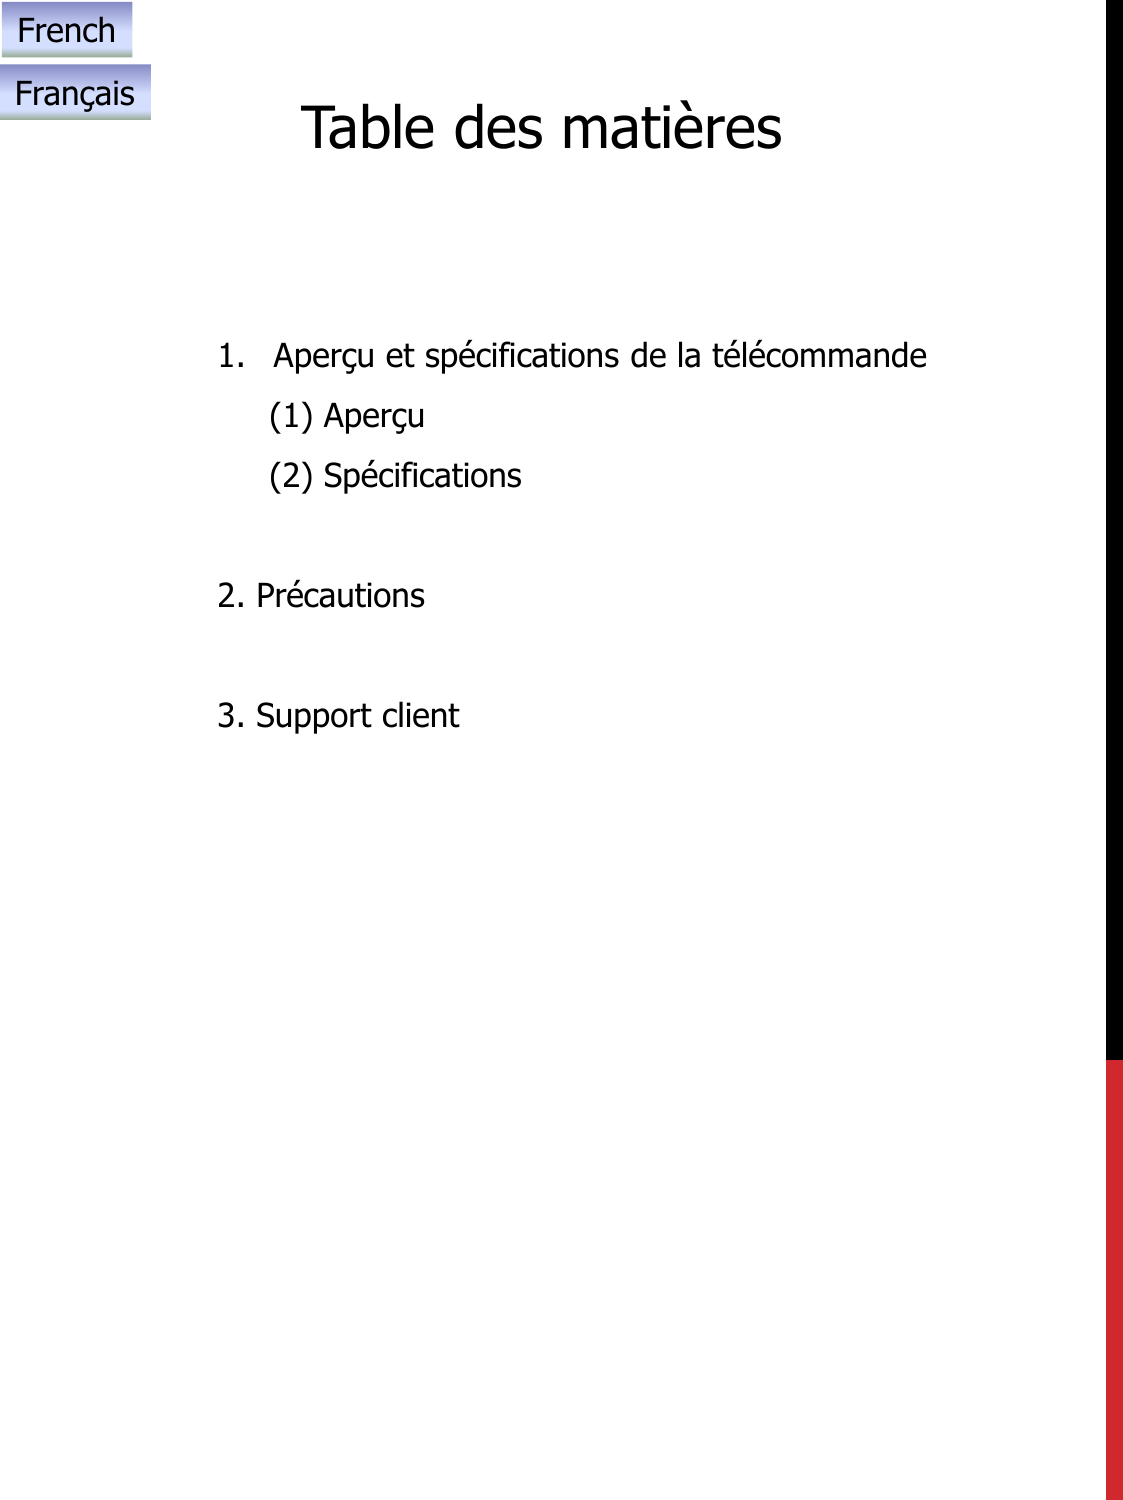 Table des matières1. Aperçu et spécifications de la télécommande(1) Aperçu(2) Spécifications2. Précautions3. Support clientFrenchFrançais